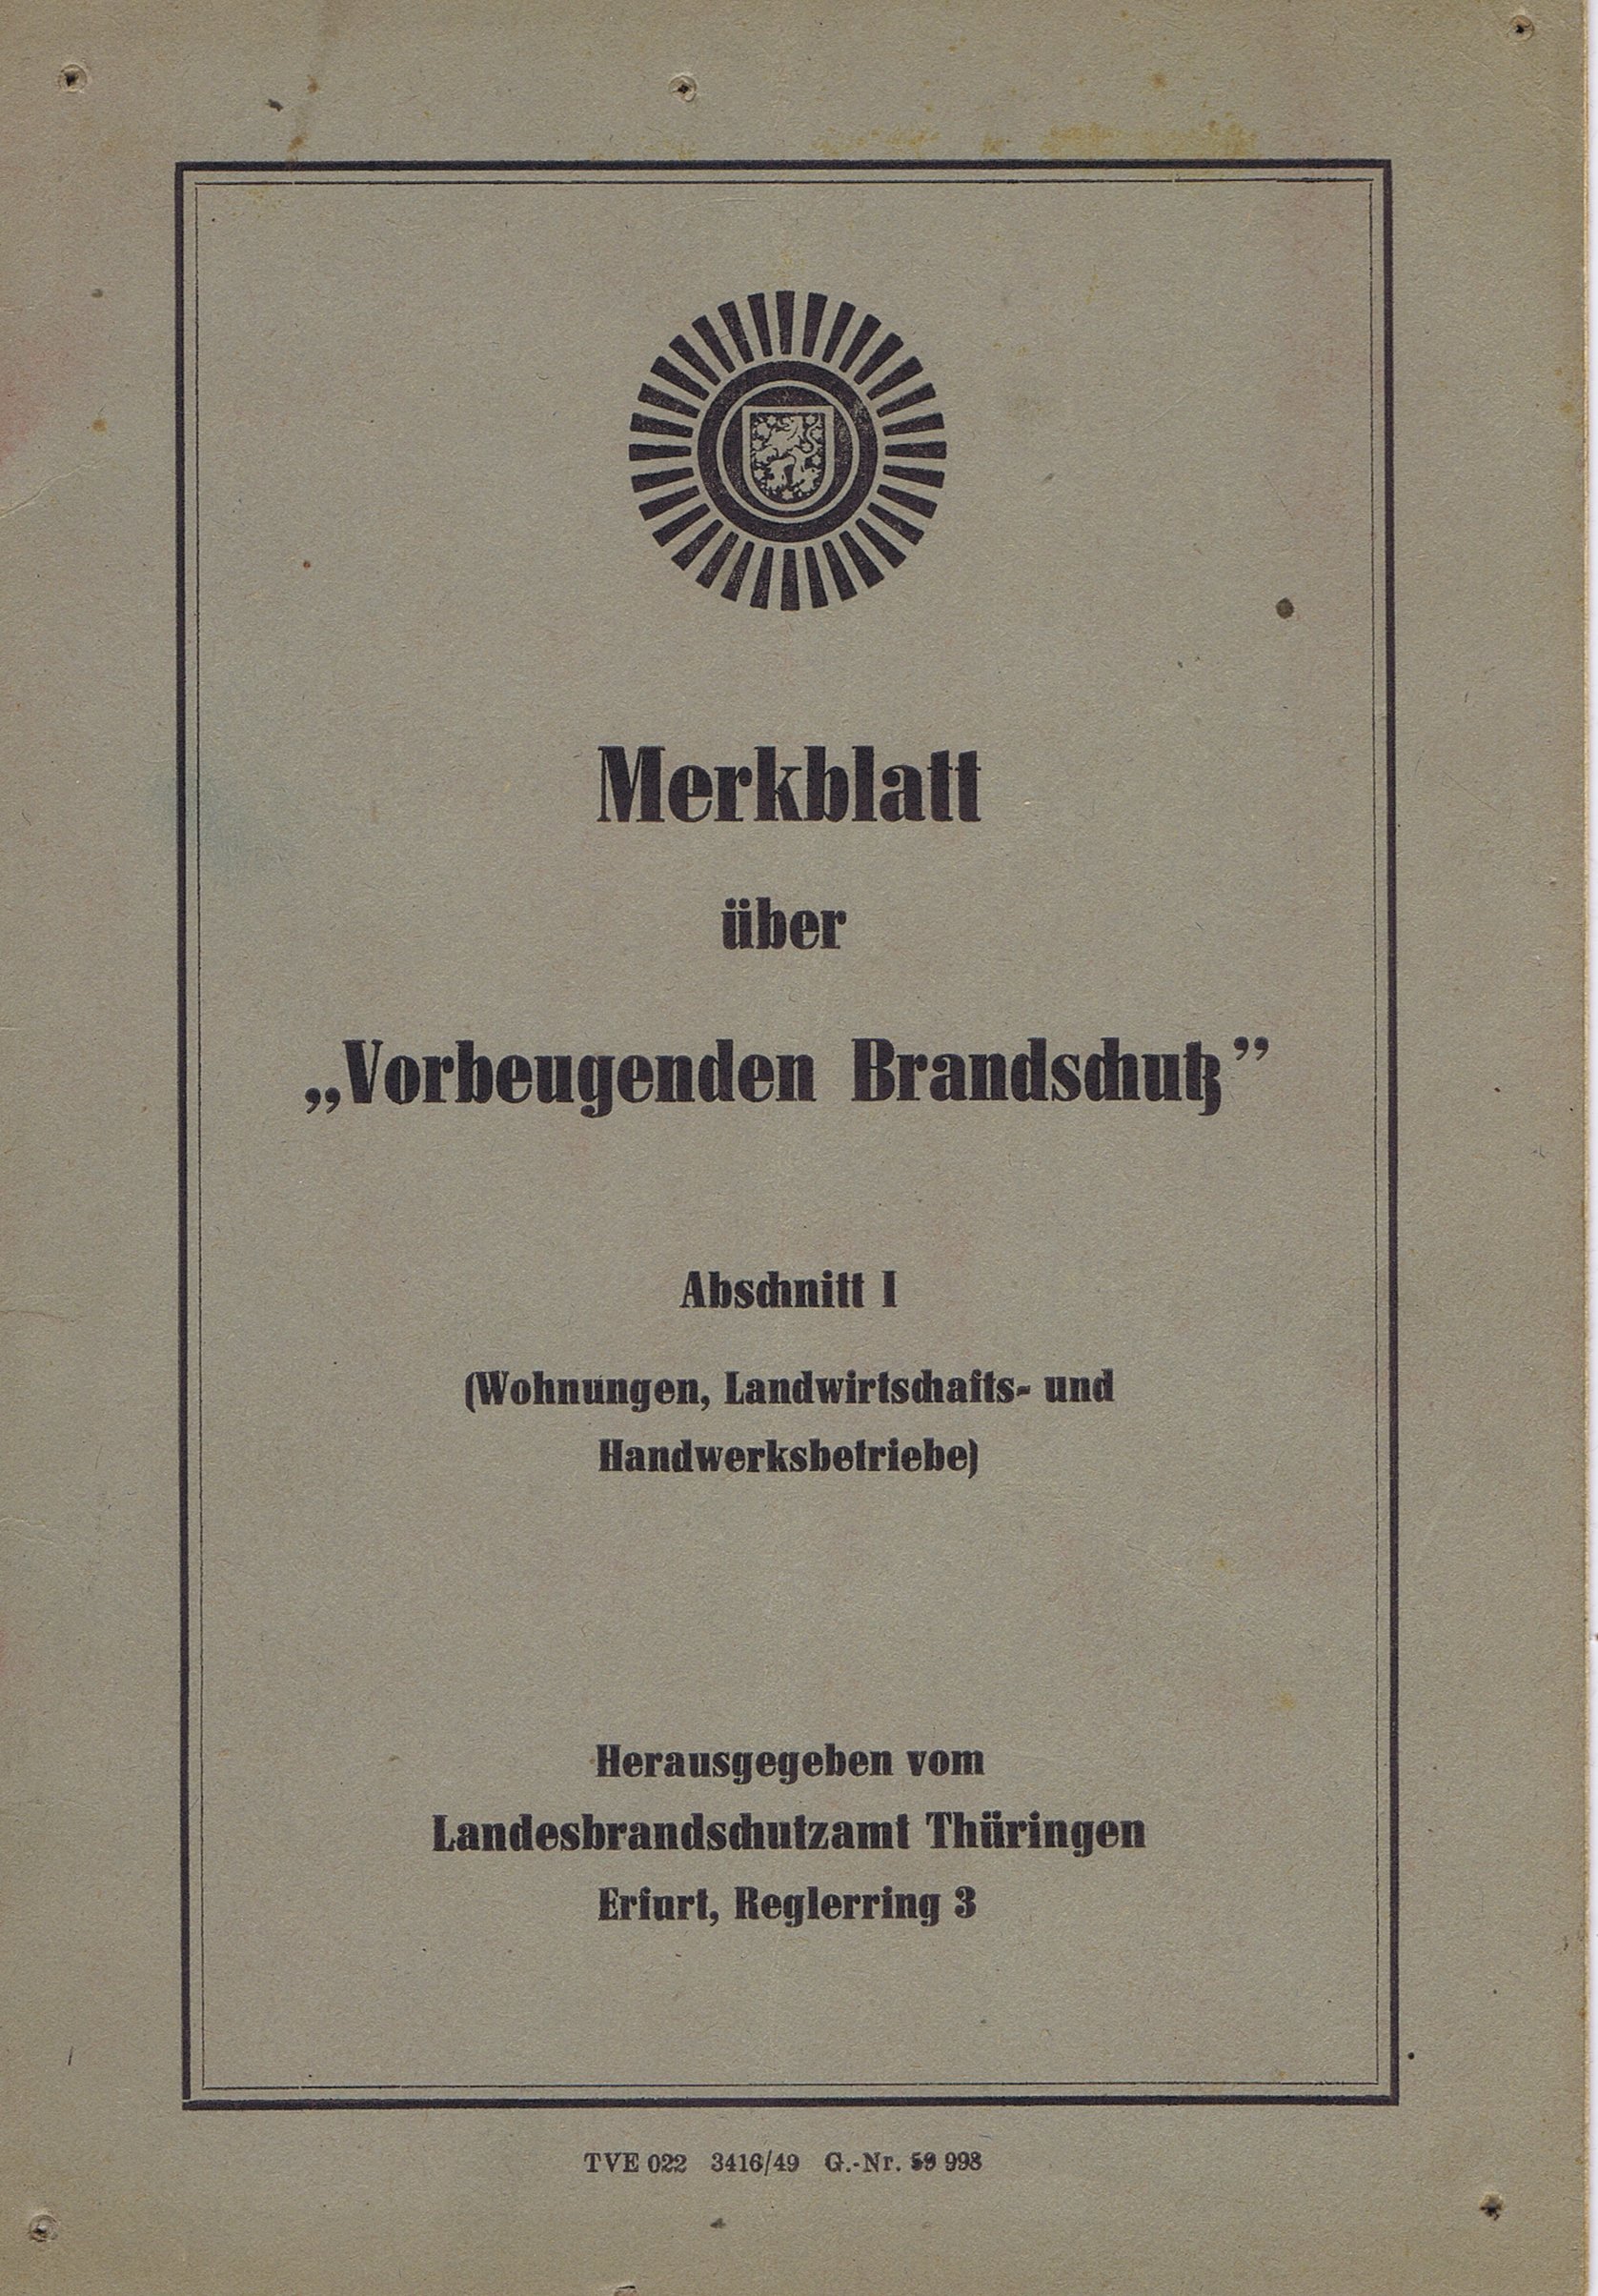 Merkblatt über "Vorbeugenden Brandschutz" (Feuerwehrmuseum Grethen CC BY-NC-SA)